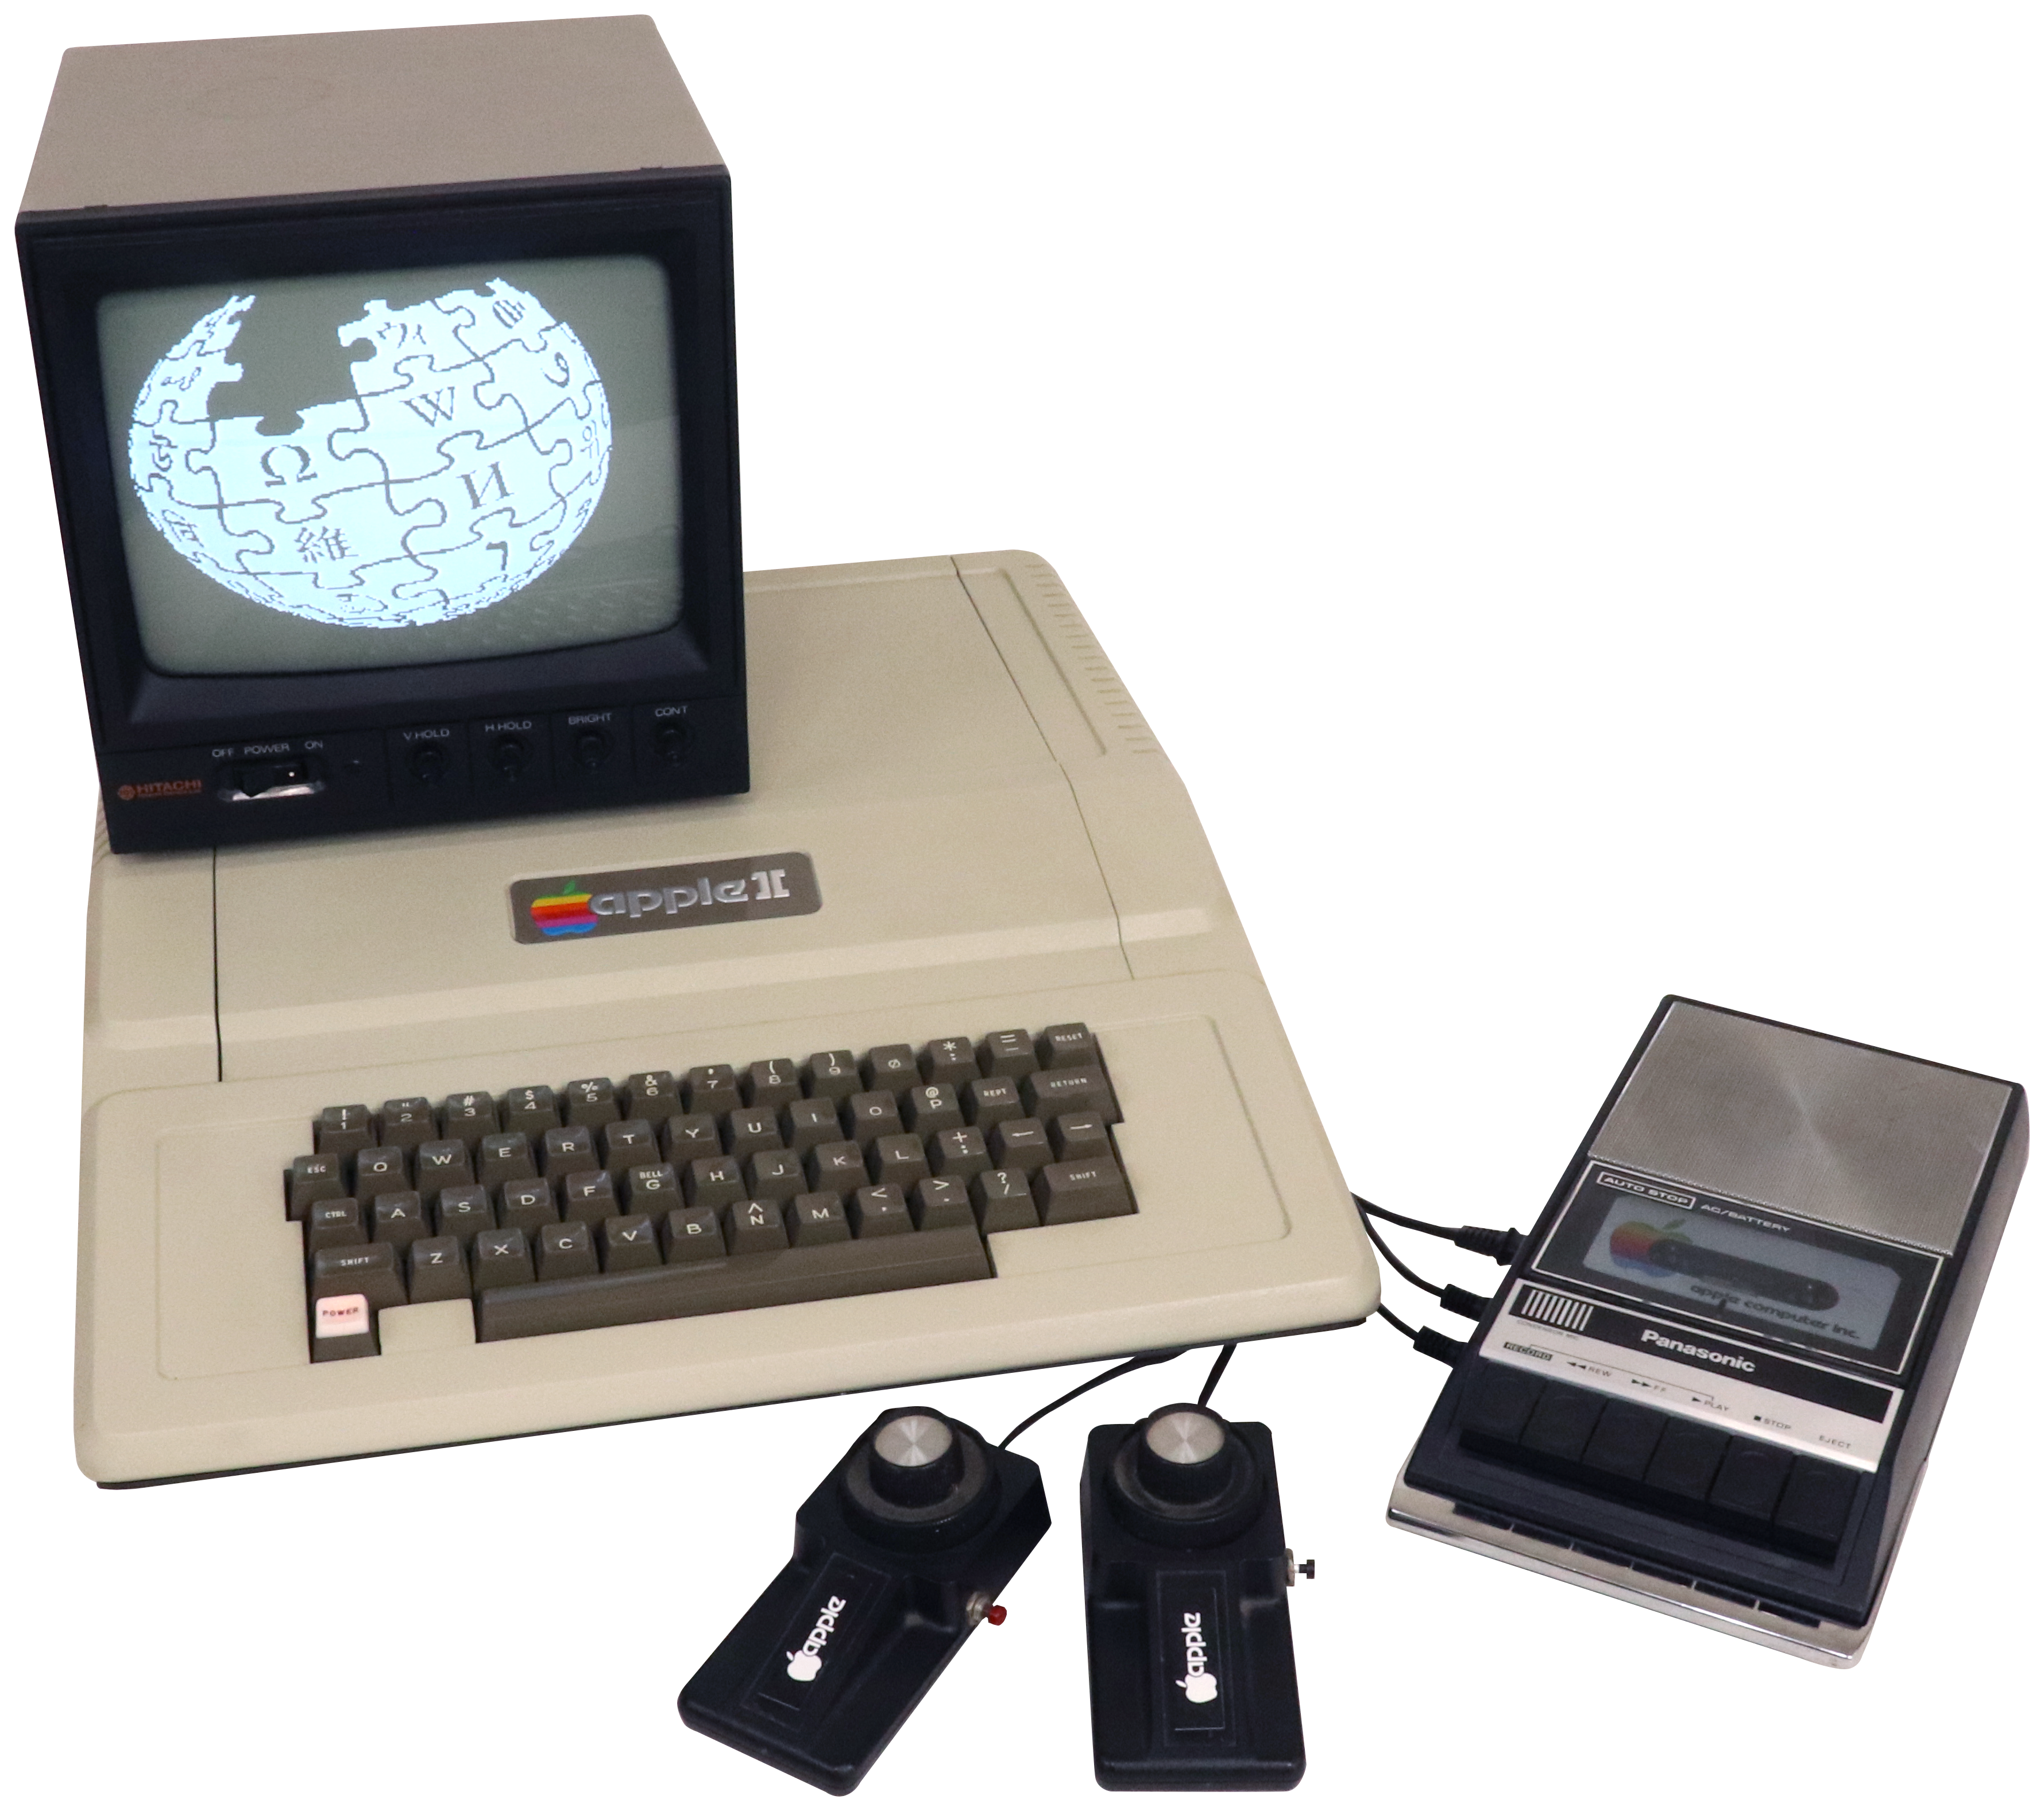 8 персональные компьютеры. Apple 2. Первый компьютер Эппл 2. Эпл 2 1977. Apple II компьютер 1977.